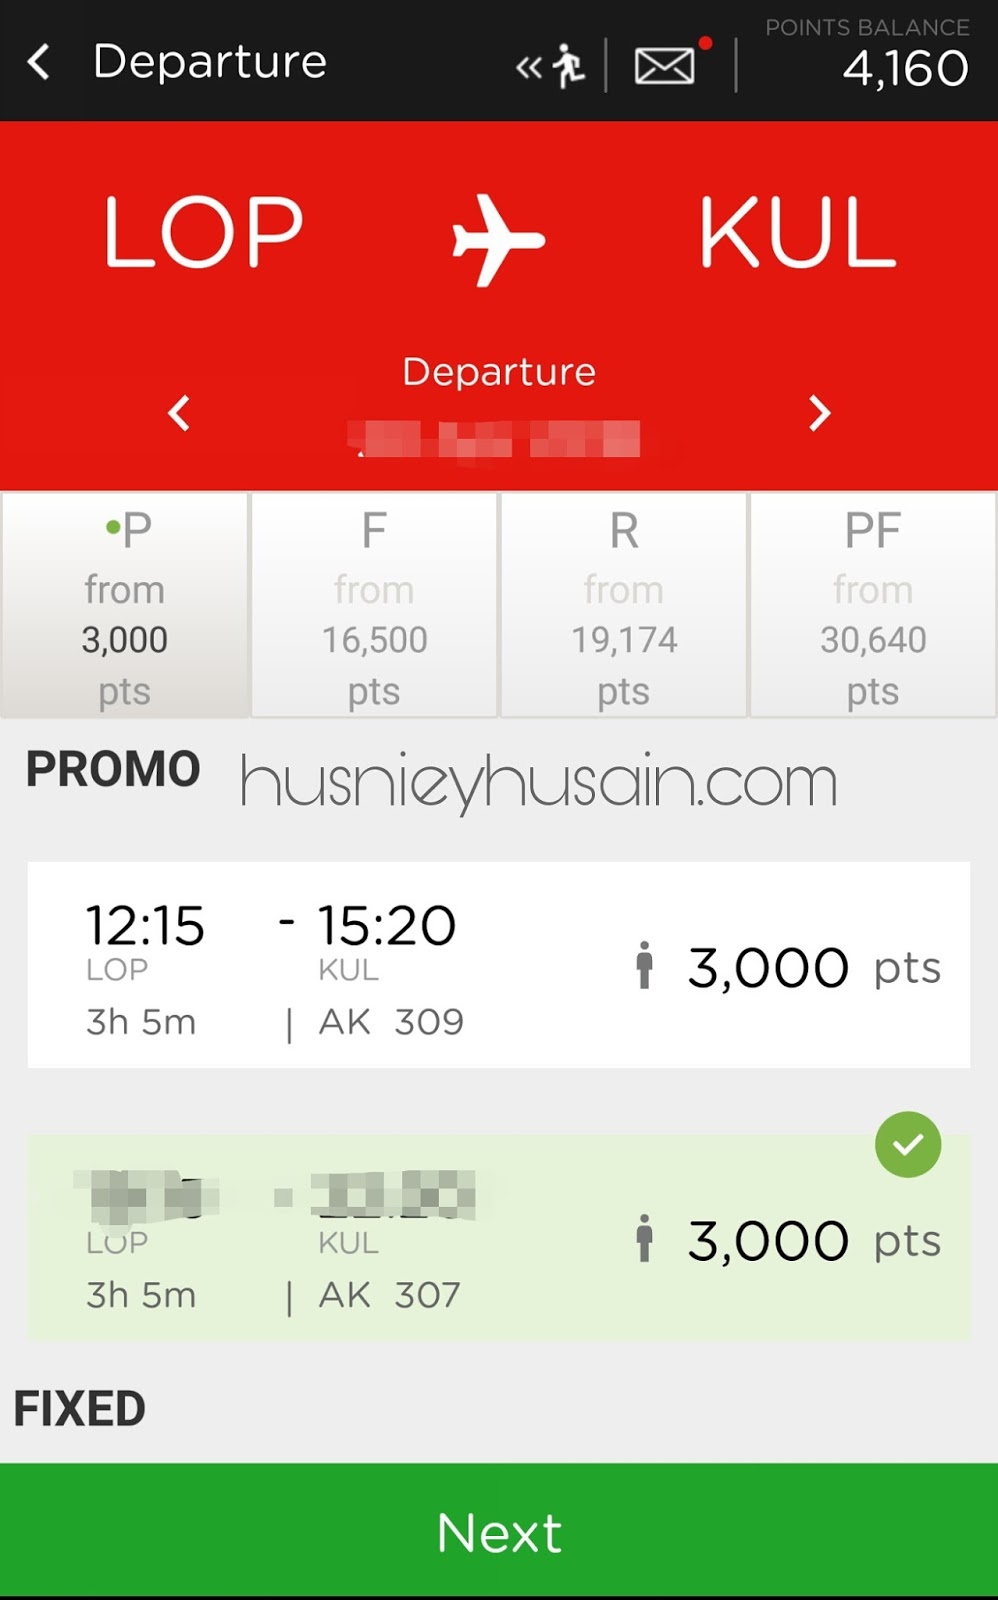 Beli Tiket Penerbangan Murah Menggunakan Airasia Big Points Husniey Husain